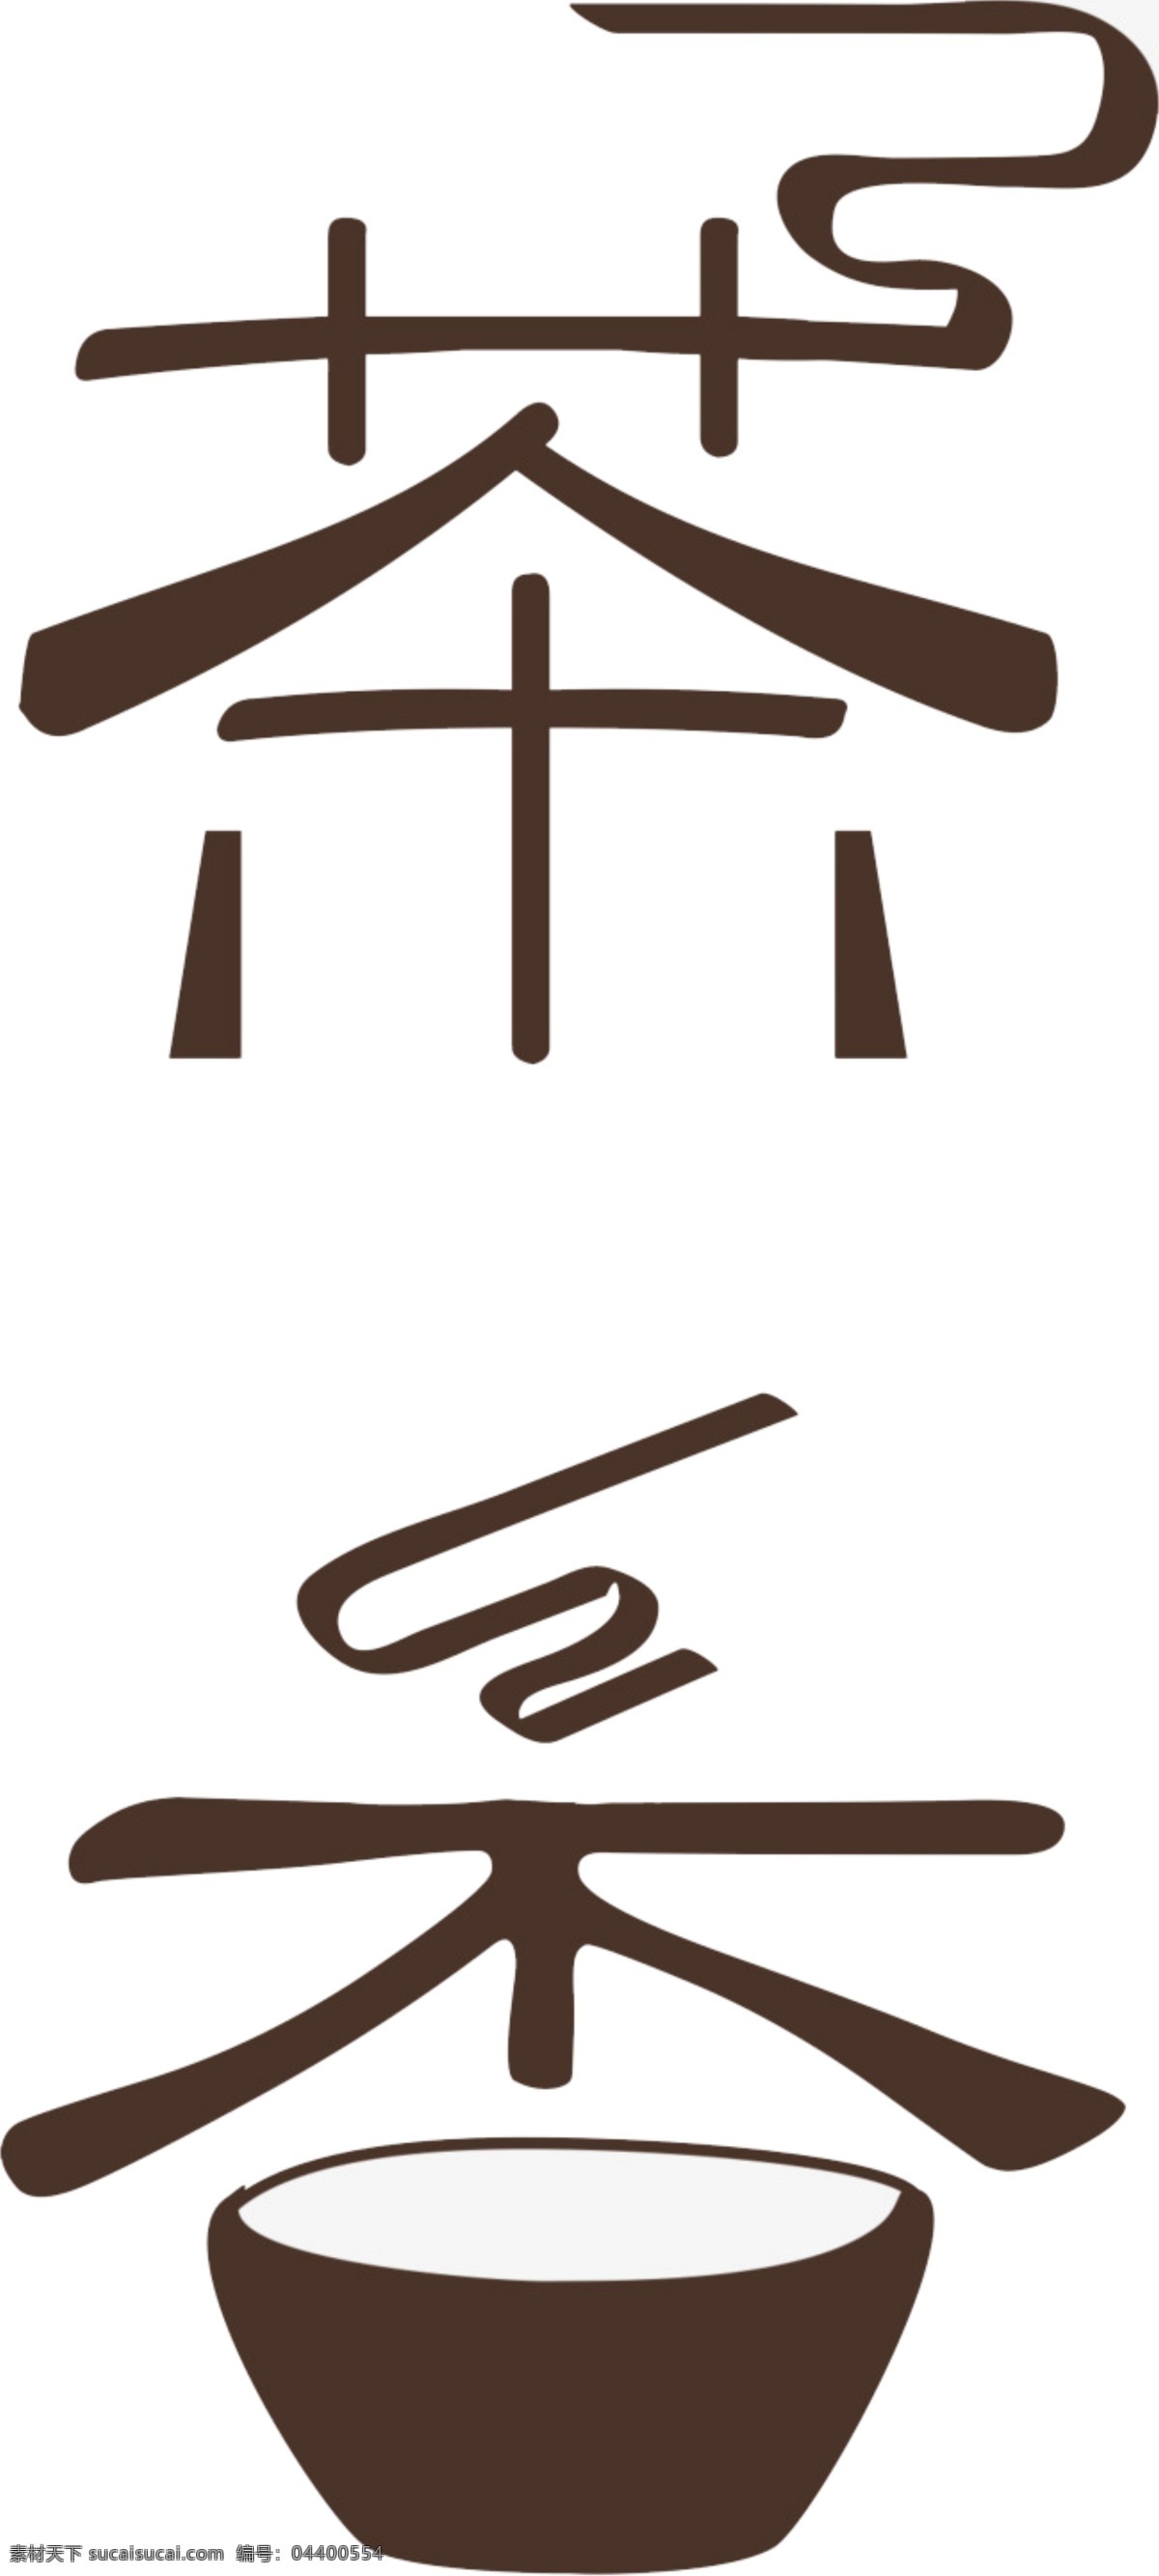 茶文化 艺术 字 茶 相关 字体 装饰 集合 茶素材 茶香 茶香四溢 茶艺术字 茶元素 茶之道 茶字体设计 禅 中国名茶